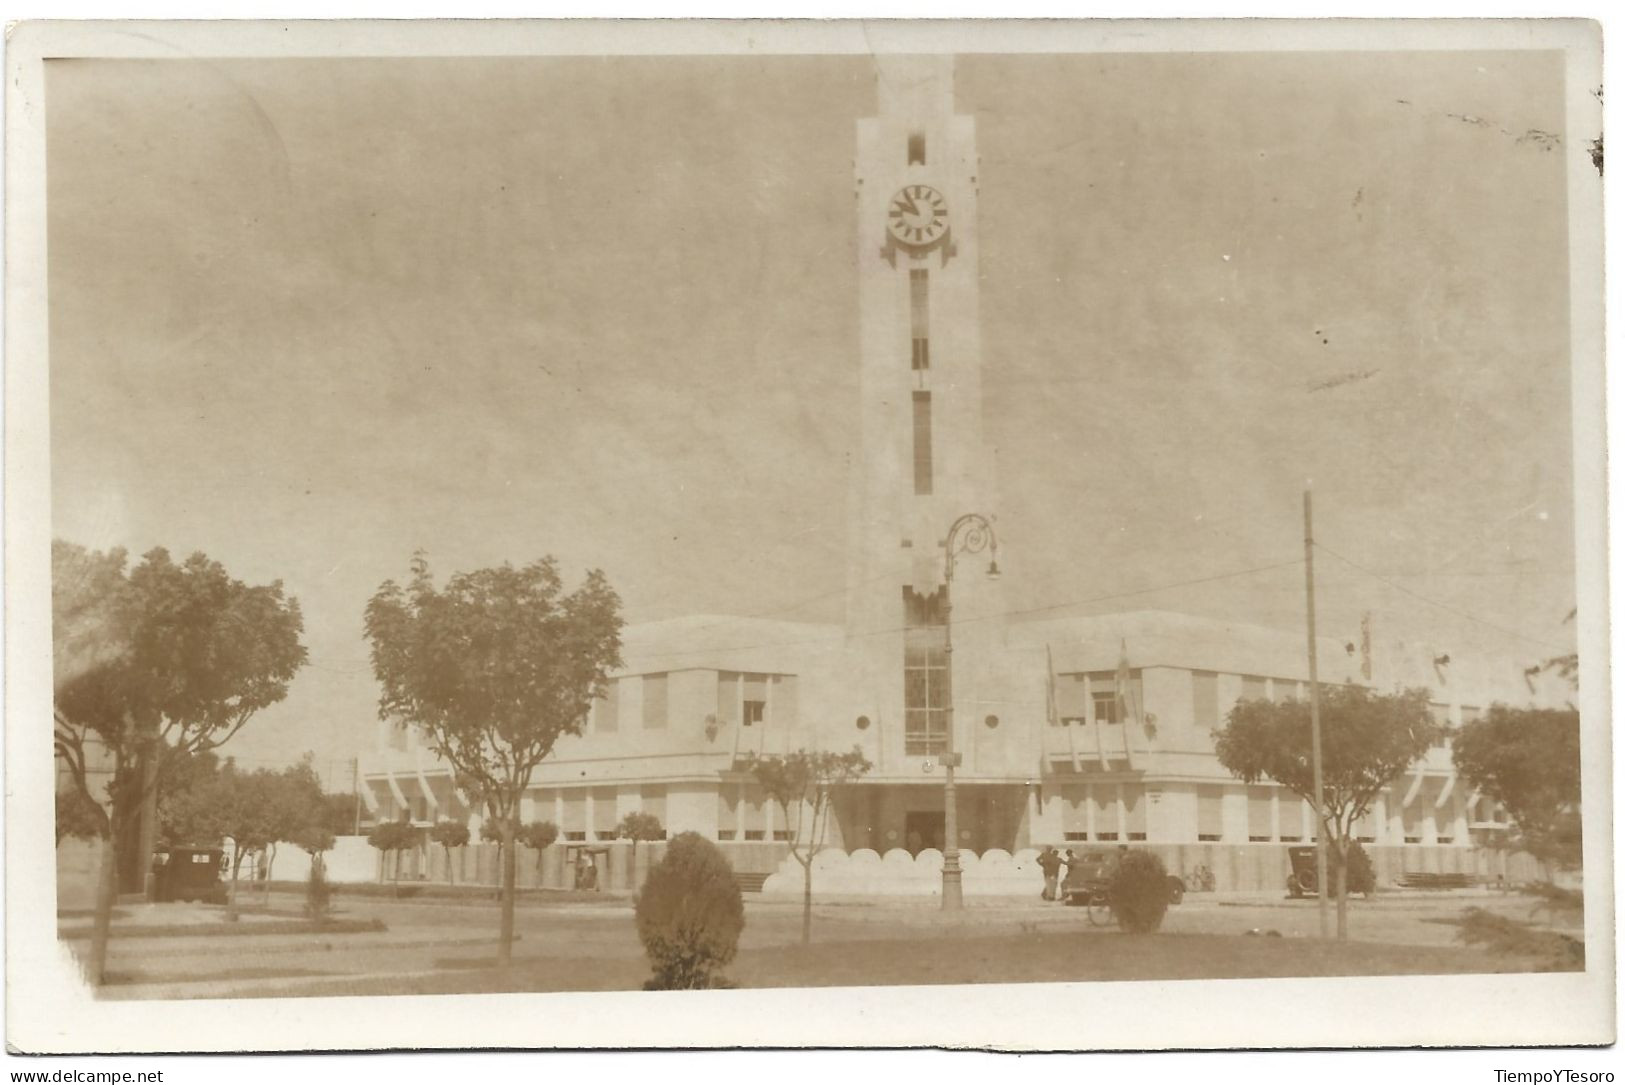 Postcard - Argentina, Buenos Aires, Carhué, 1938, N°544 - Argentine